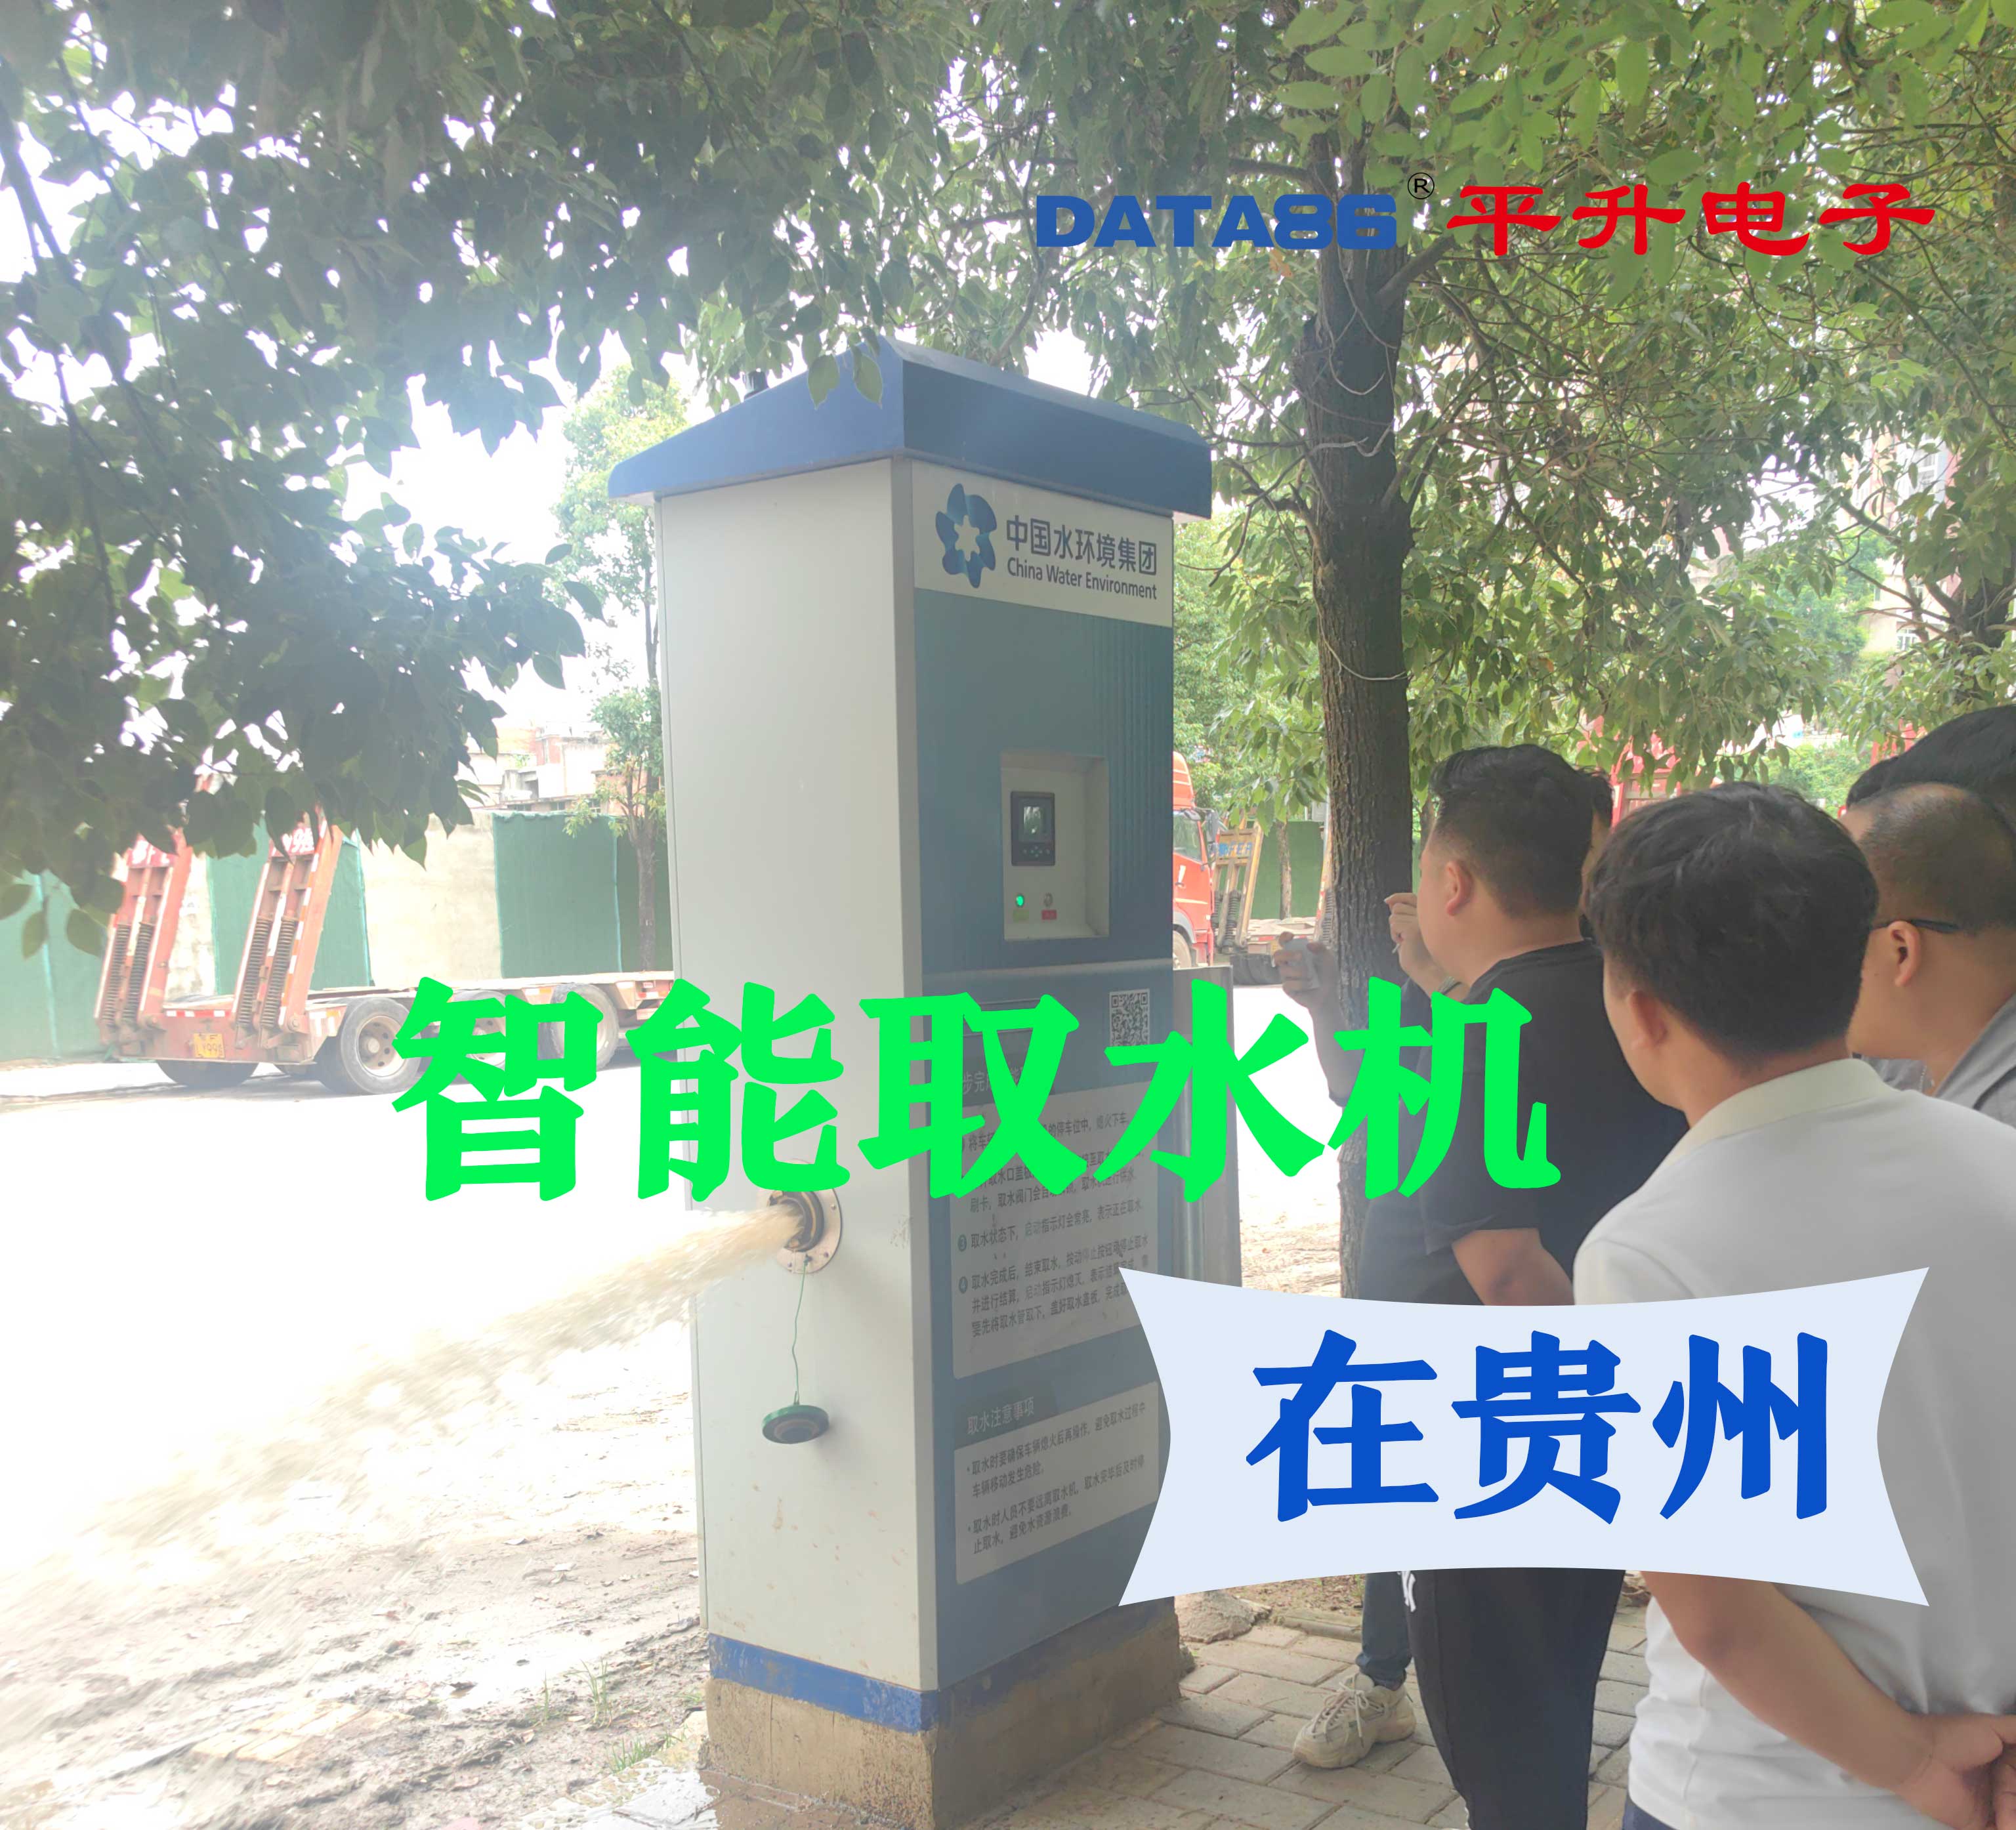 智能取水机在贵州应用案例#智能取水机 #智能加水机 #市政环卫自助加水站 #园林绿化扫码取水设施 #平升电子 